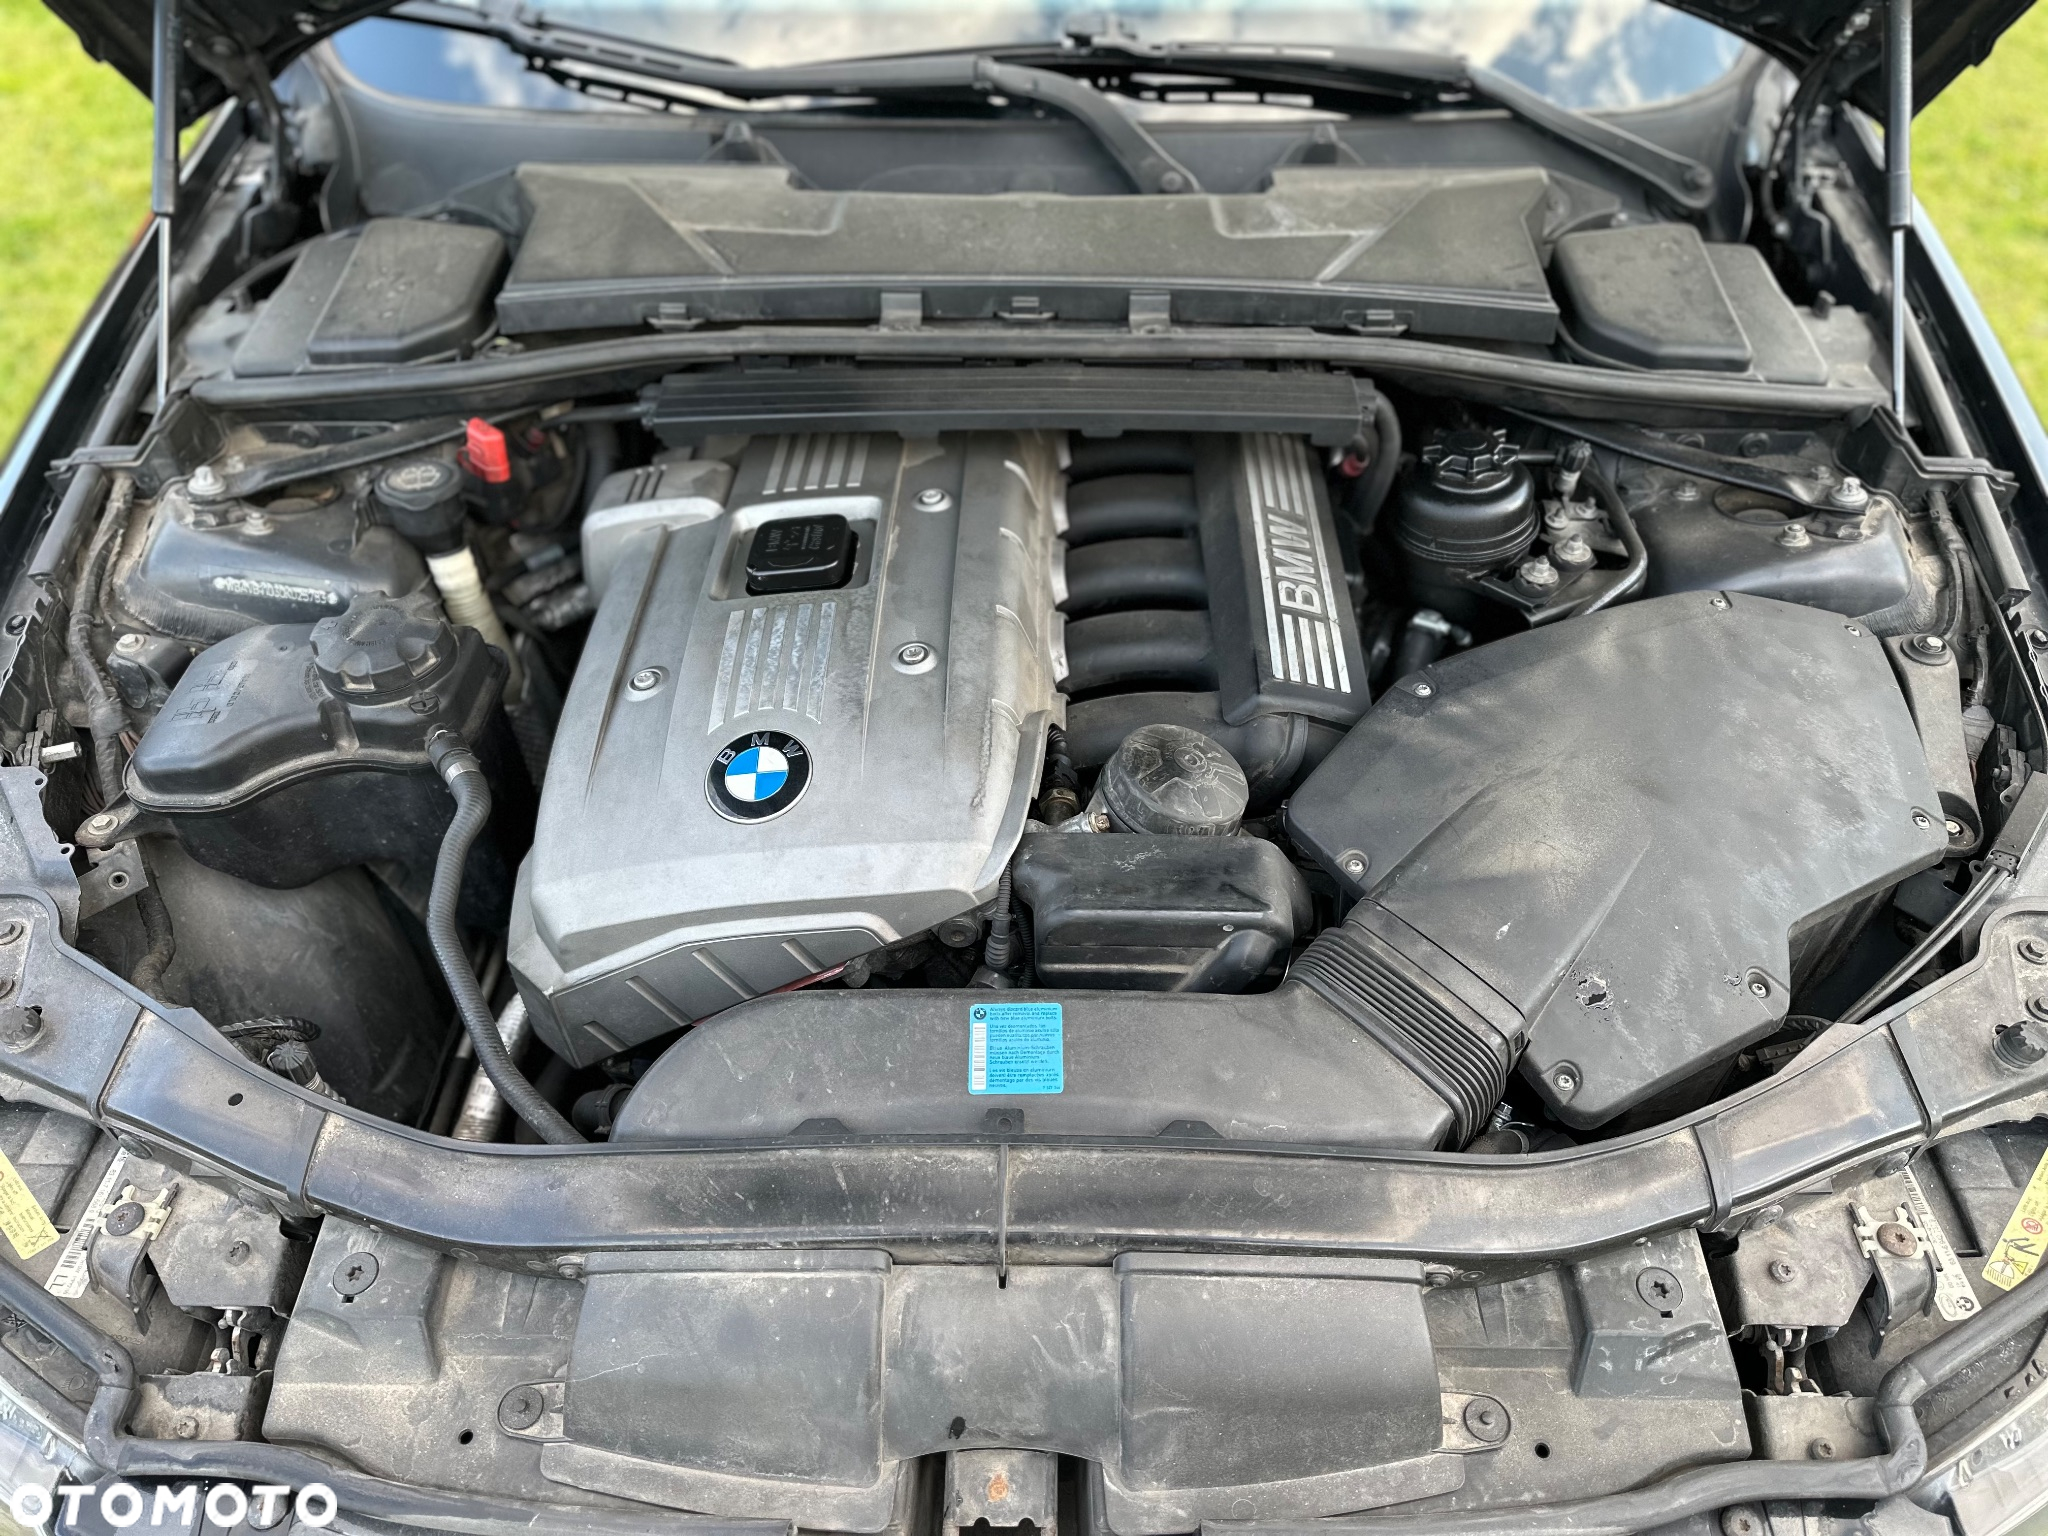 BMW Seria 3 325i - 12